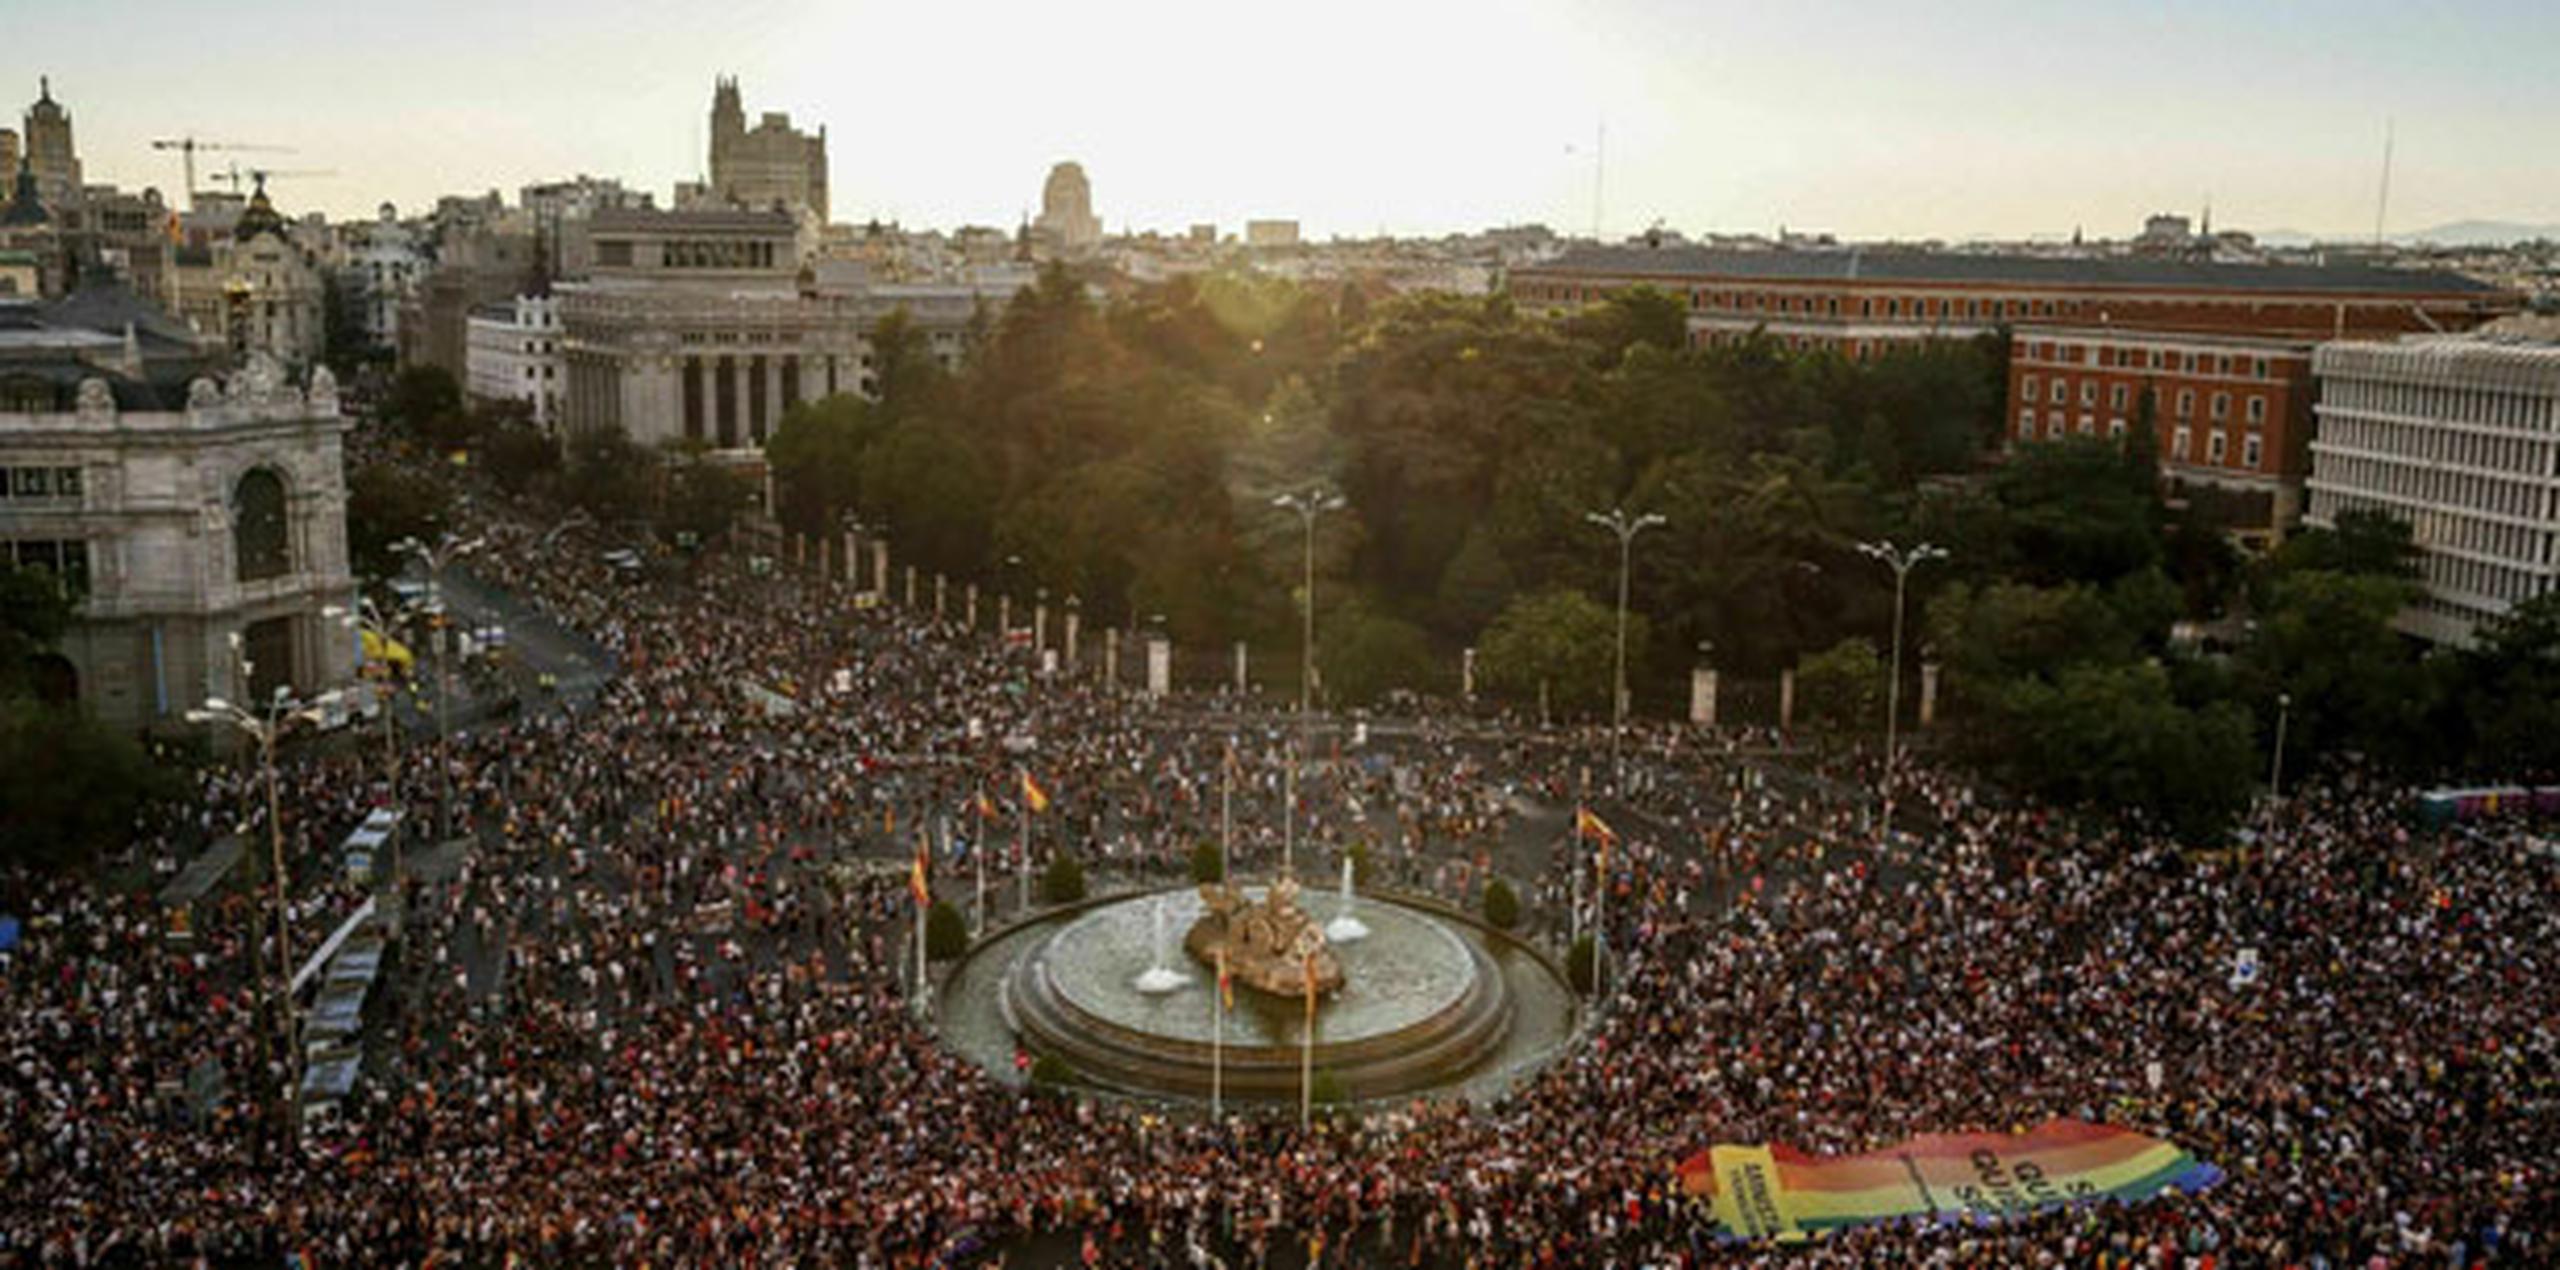 El desfile en la capital española, uno de los más grandes en el mundo, tuvo momentos de tensión cuando la policía retiró a políticos de centro derecha a los que activistas LGBTQ les impidieron que continuaran marchando a medio trayecto. (AP)